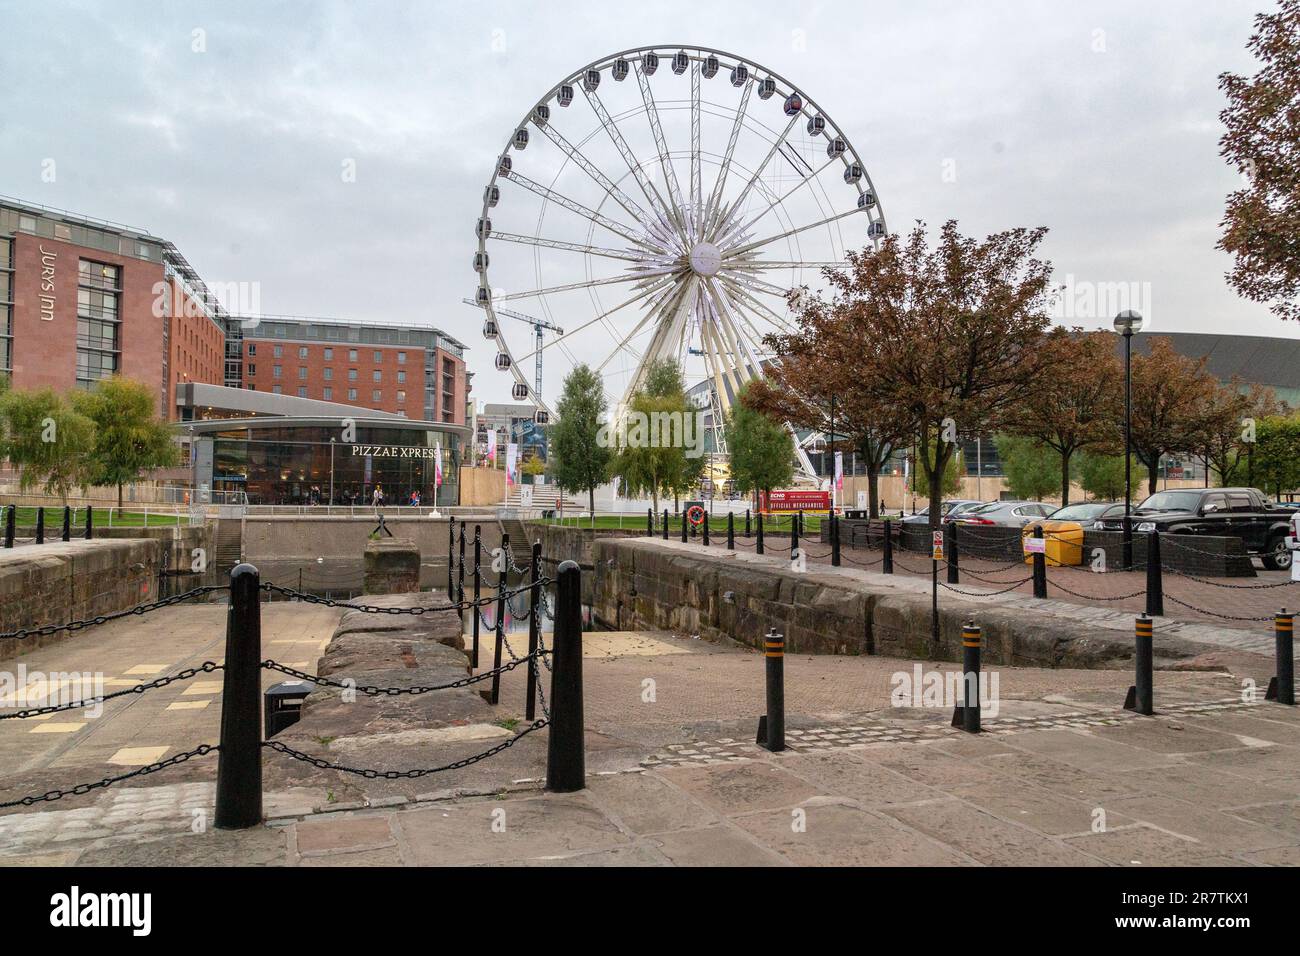 LIVERPOOL, GROSSBRITANNIEN - 13. SEPTEMBER 2014: Dies ist ein Vergnügungspark mit einem Riesenrad auf dem Gelände der ehemaligen Docks. Stockfoto